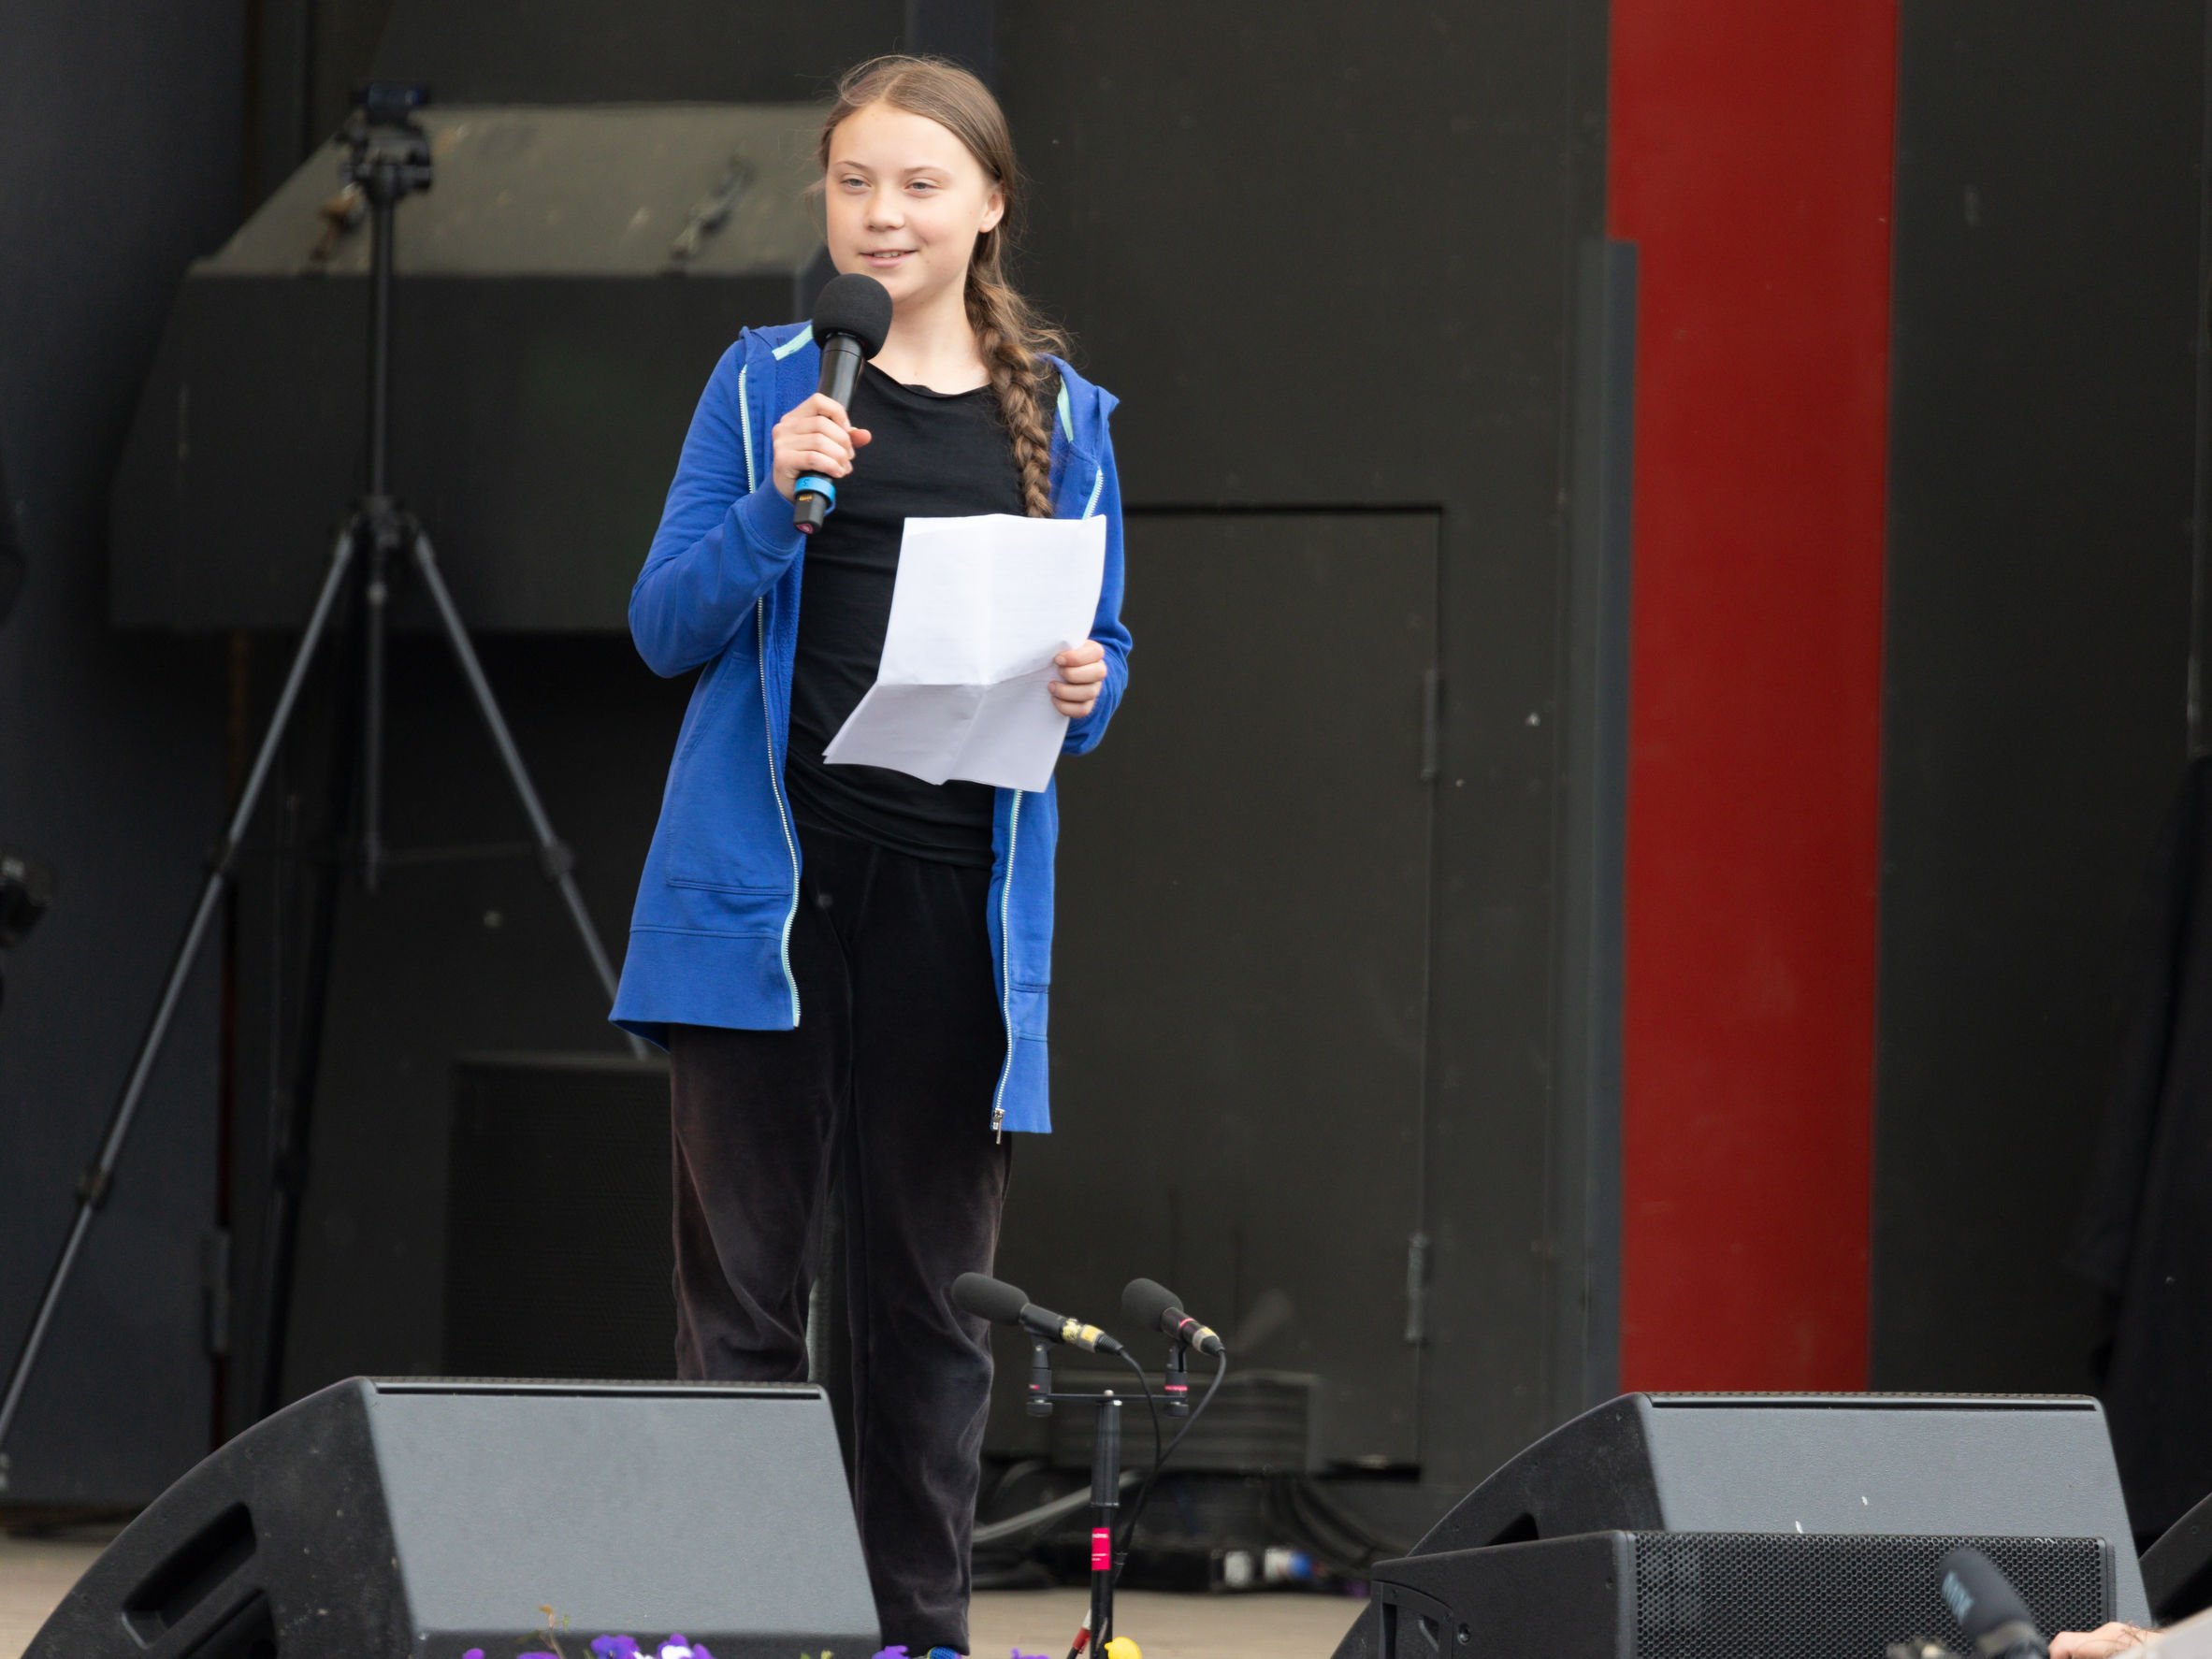 Greta Thunberg discursando em cima de palco, com microfone.